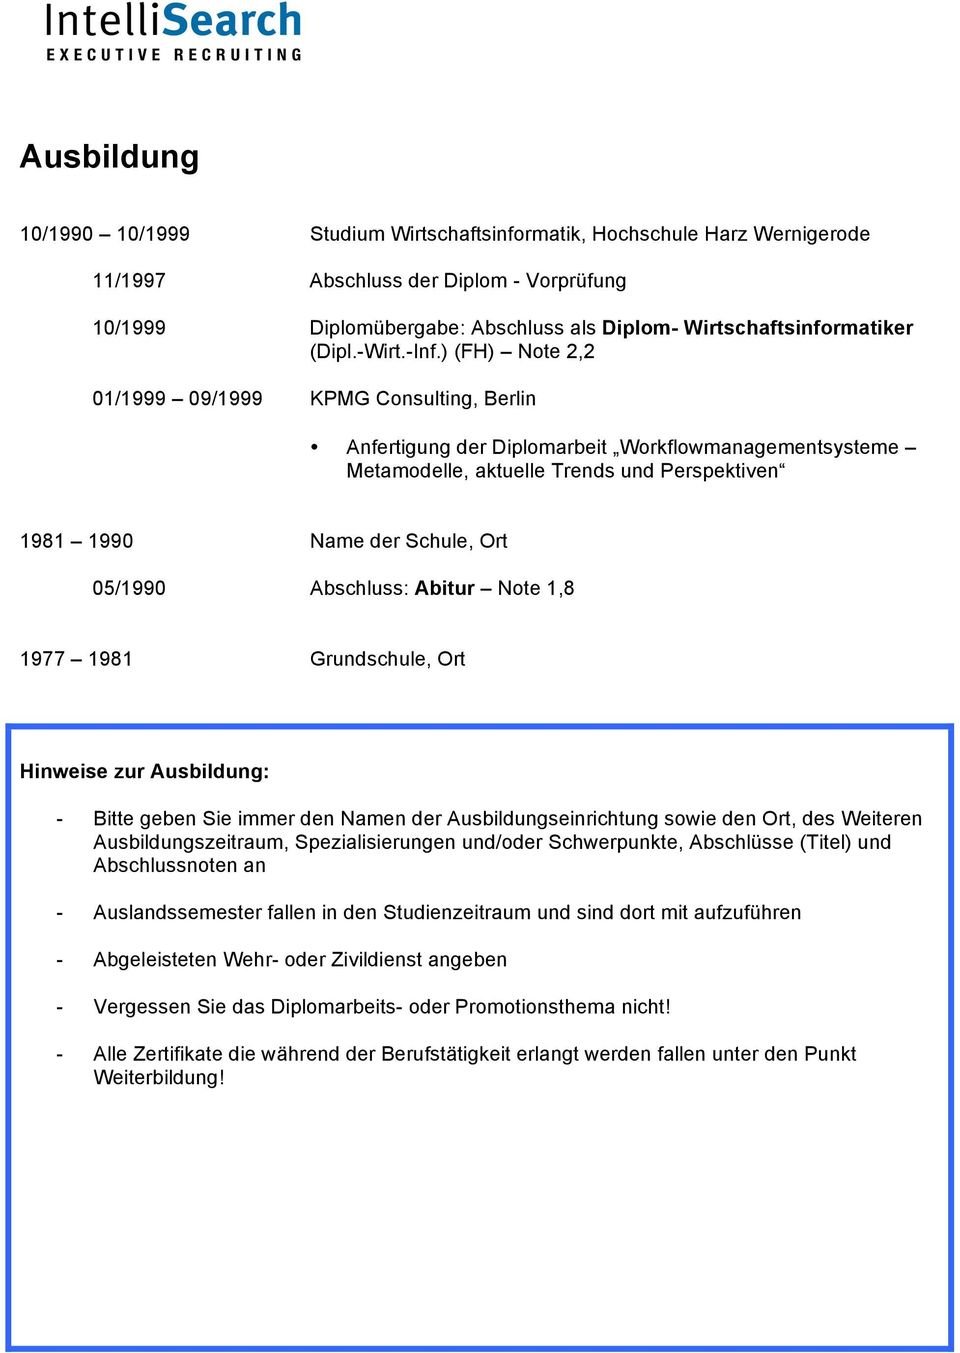 ) (FH) Note 2,2 01/1999 09/1999 KPMG Consulting, Berlin Anfertigung der Diplomarbeit Workflowmanagementsysteme Metamodelle, aktuelle Trends und Perspektiven 1981 1990 Name der Schule, Ort 05/1990